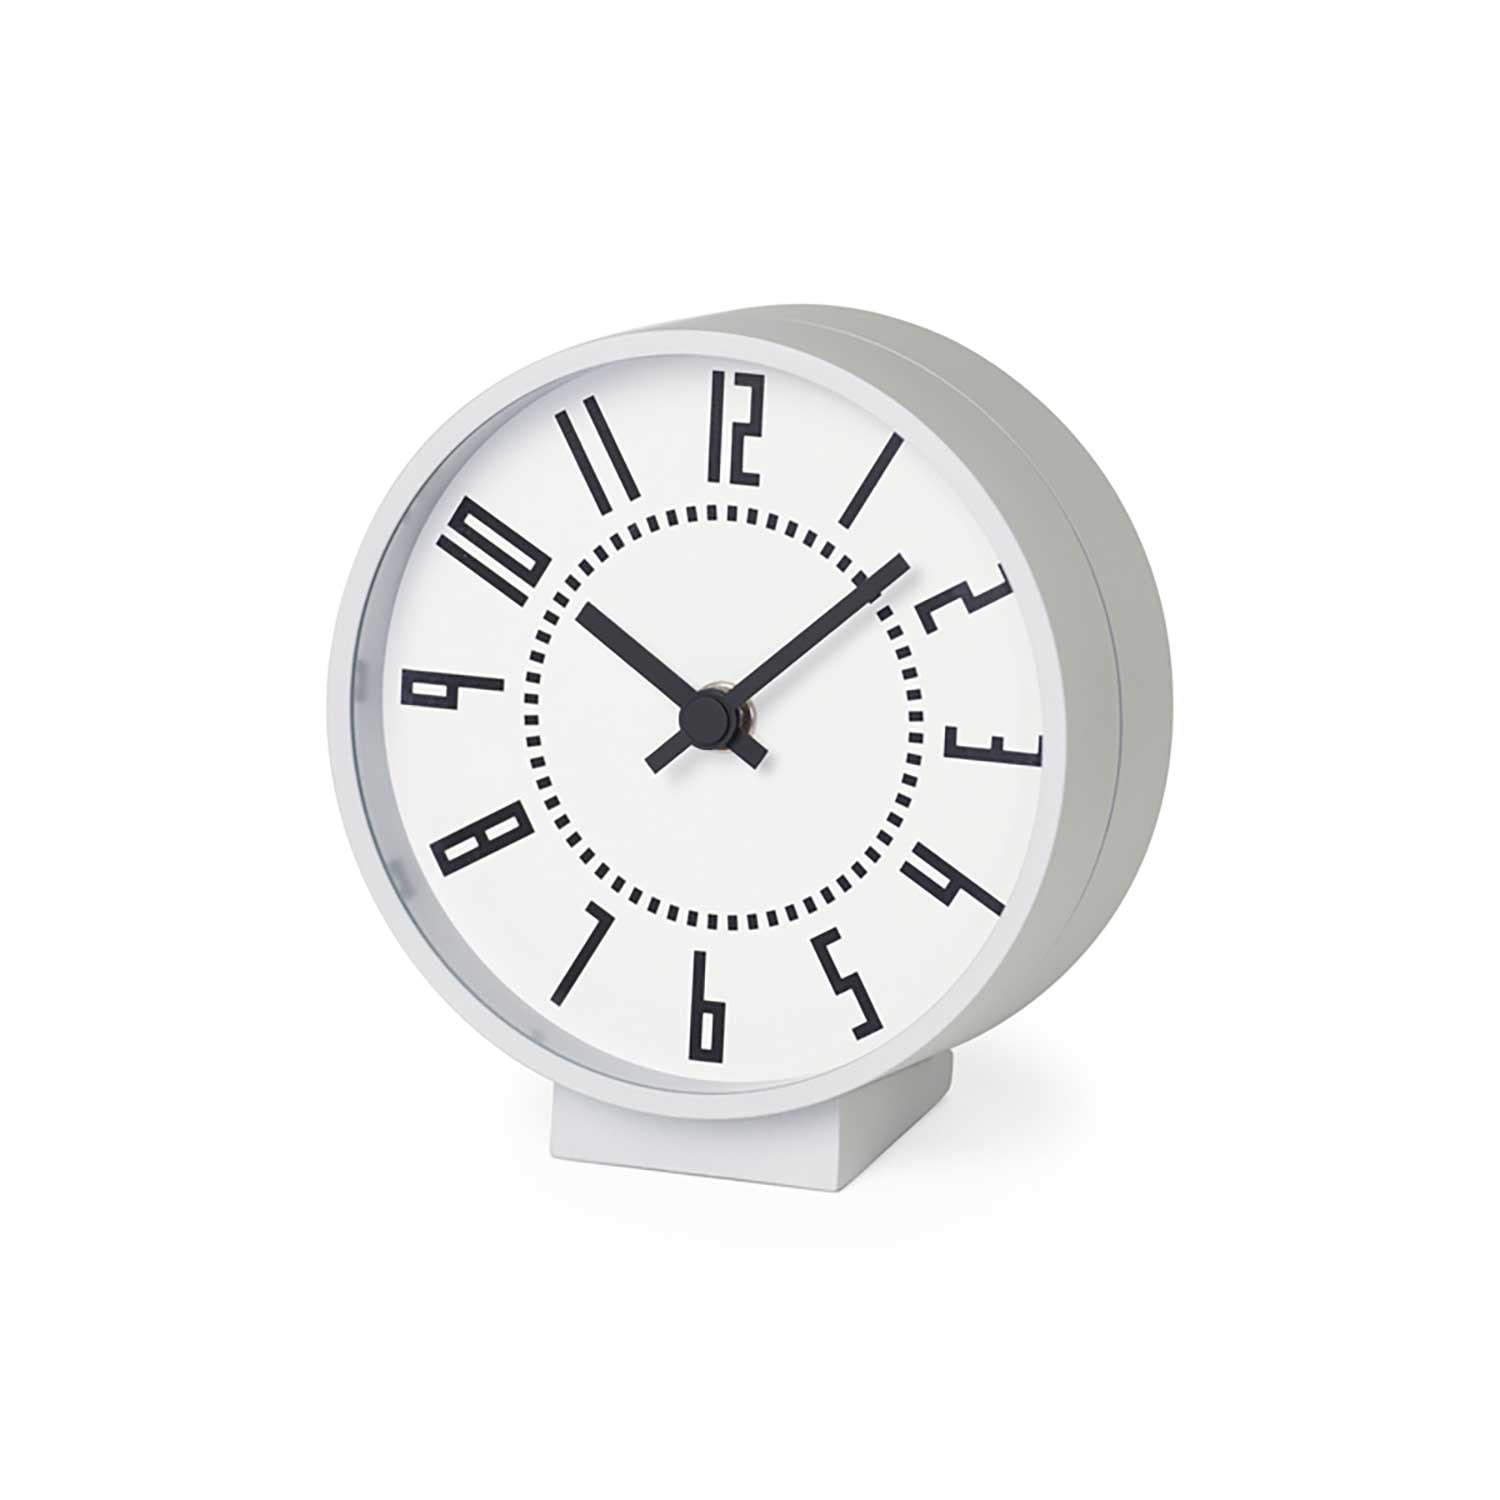 読み易く美しい駅時計デザイン 「エキ クロック S」【置き時計